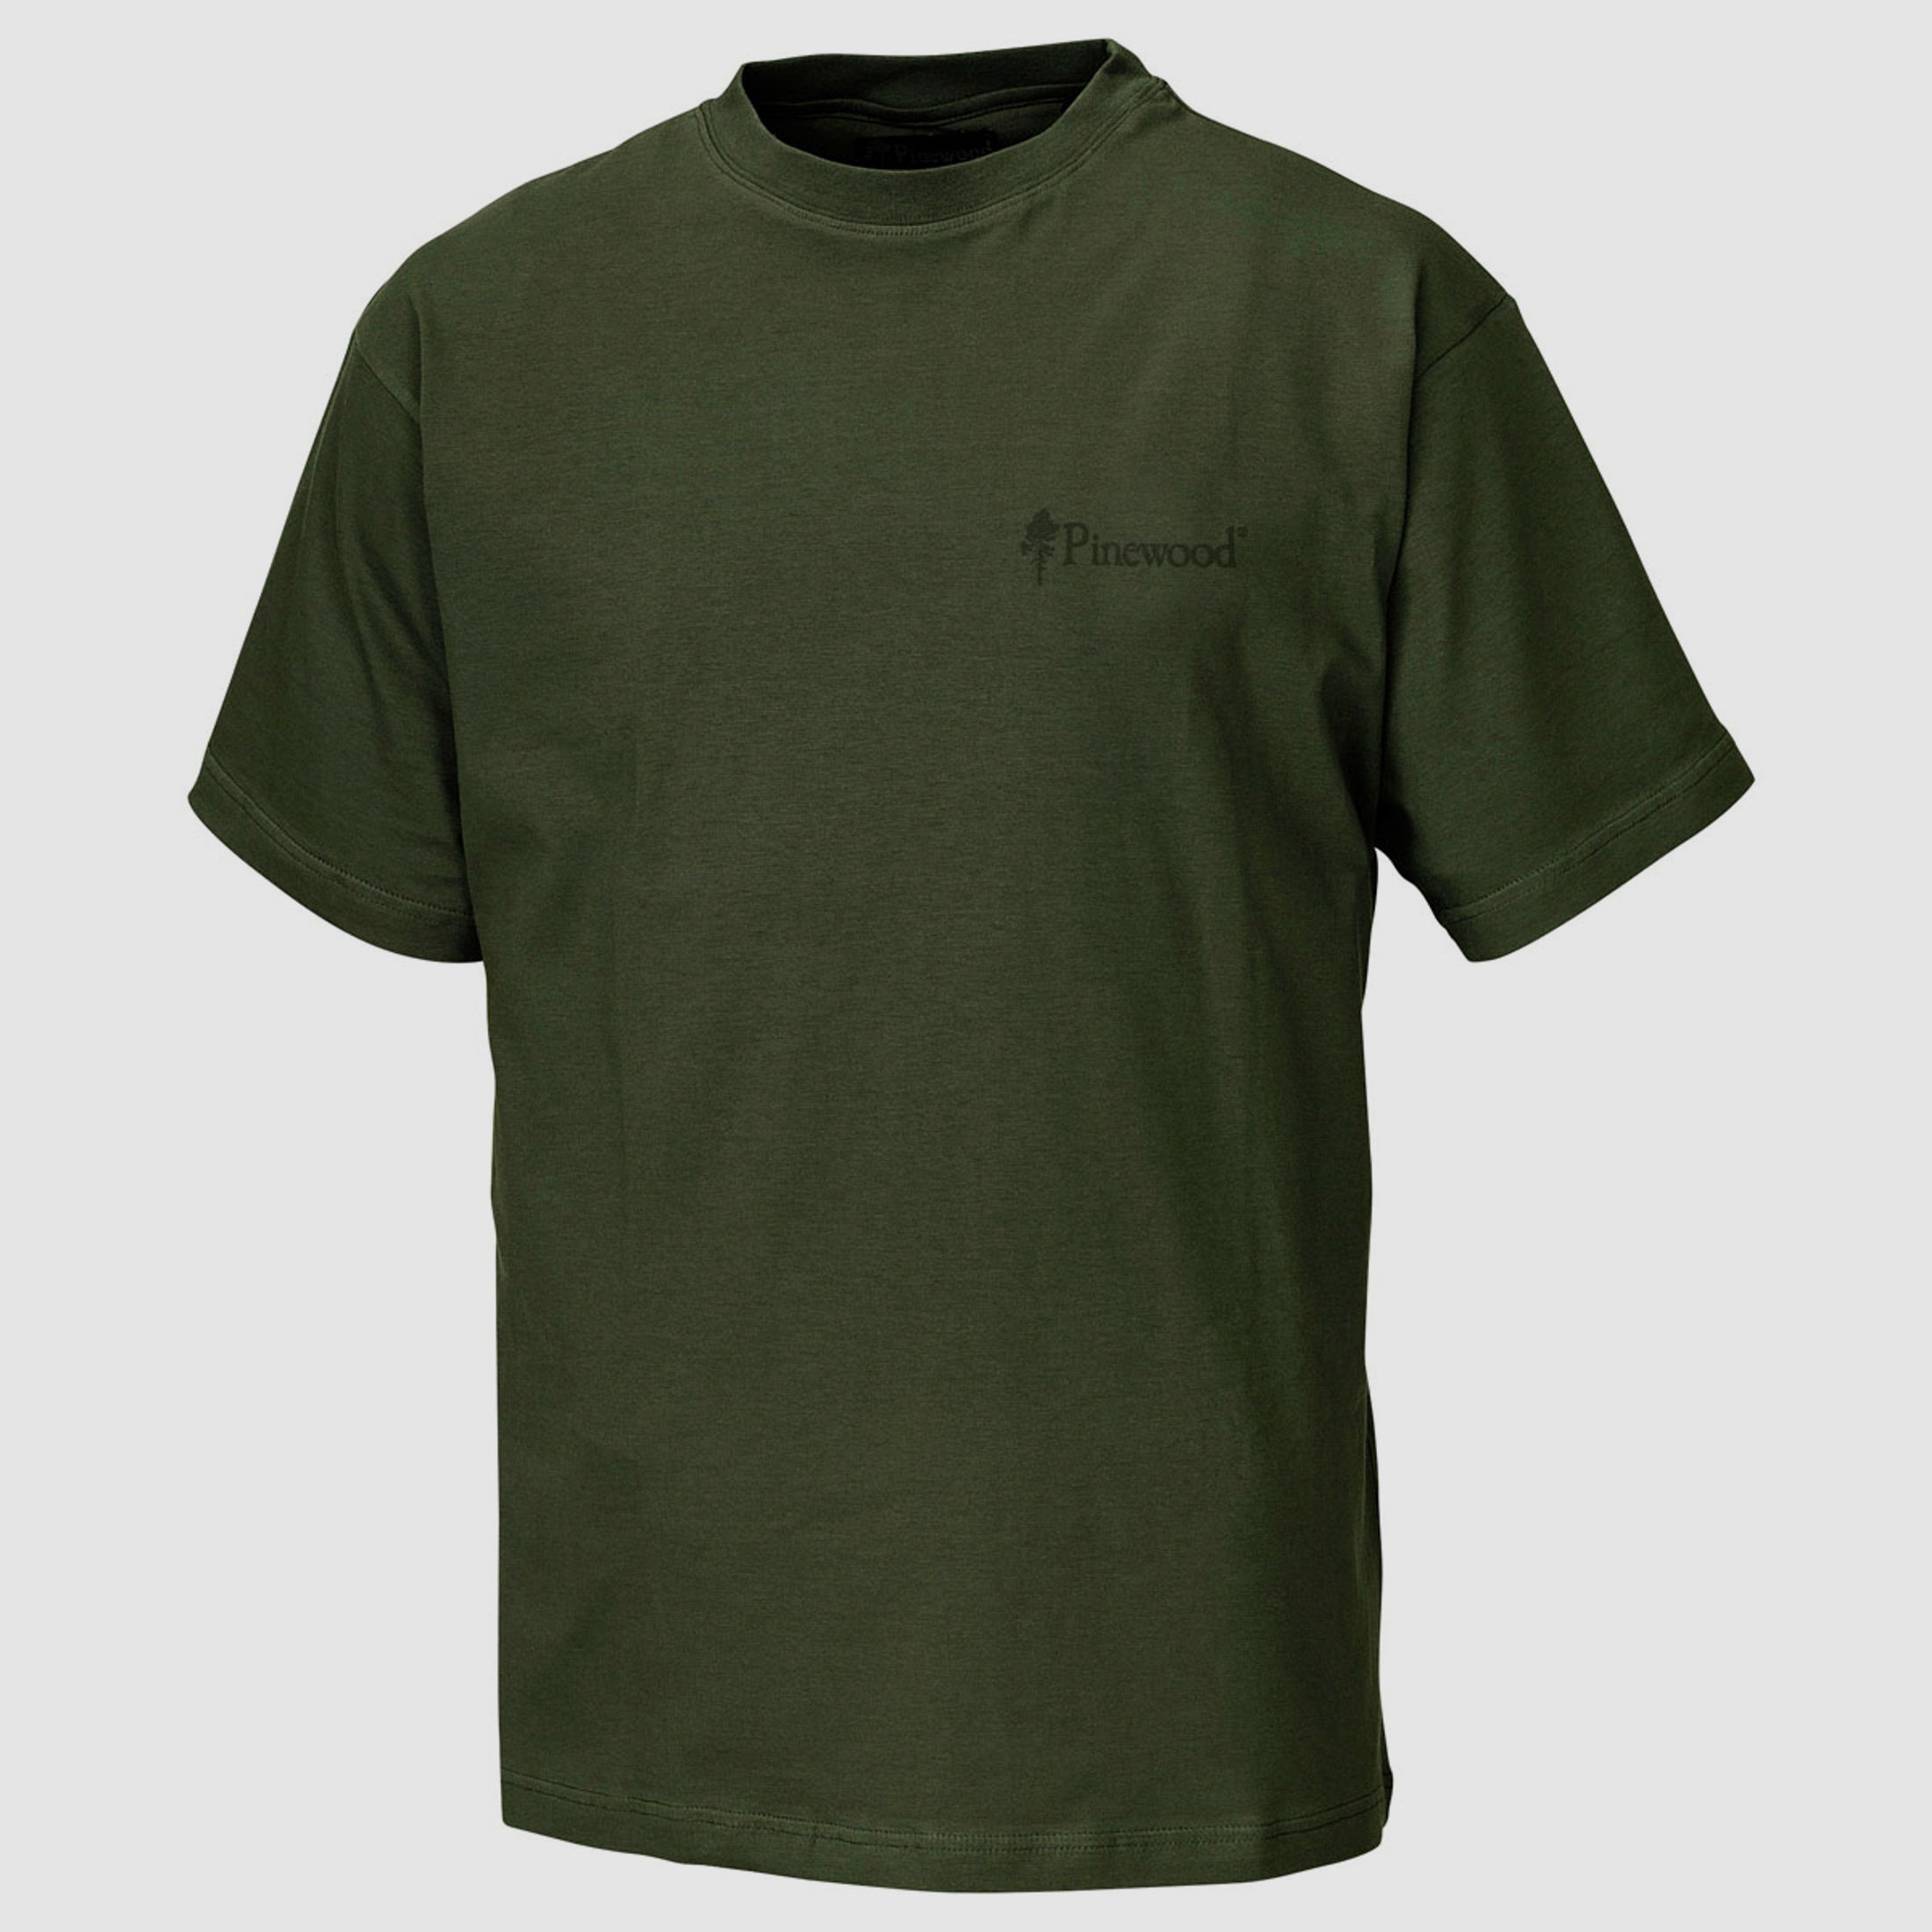 Pinewood T-Shirt 2-er Pack  Green